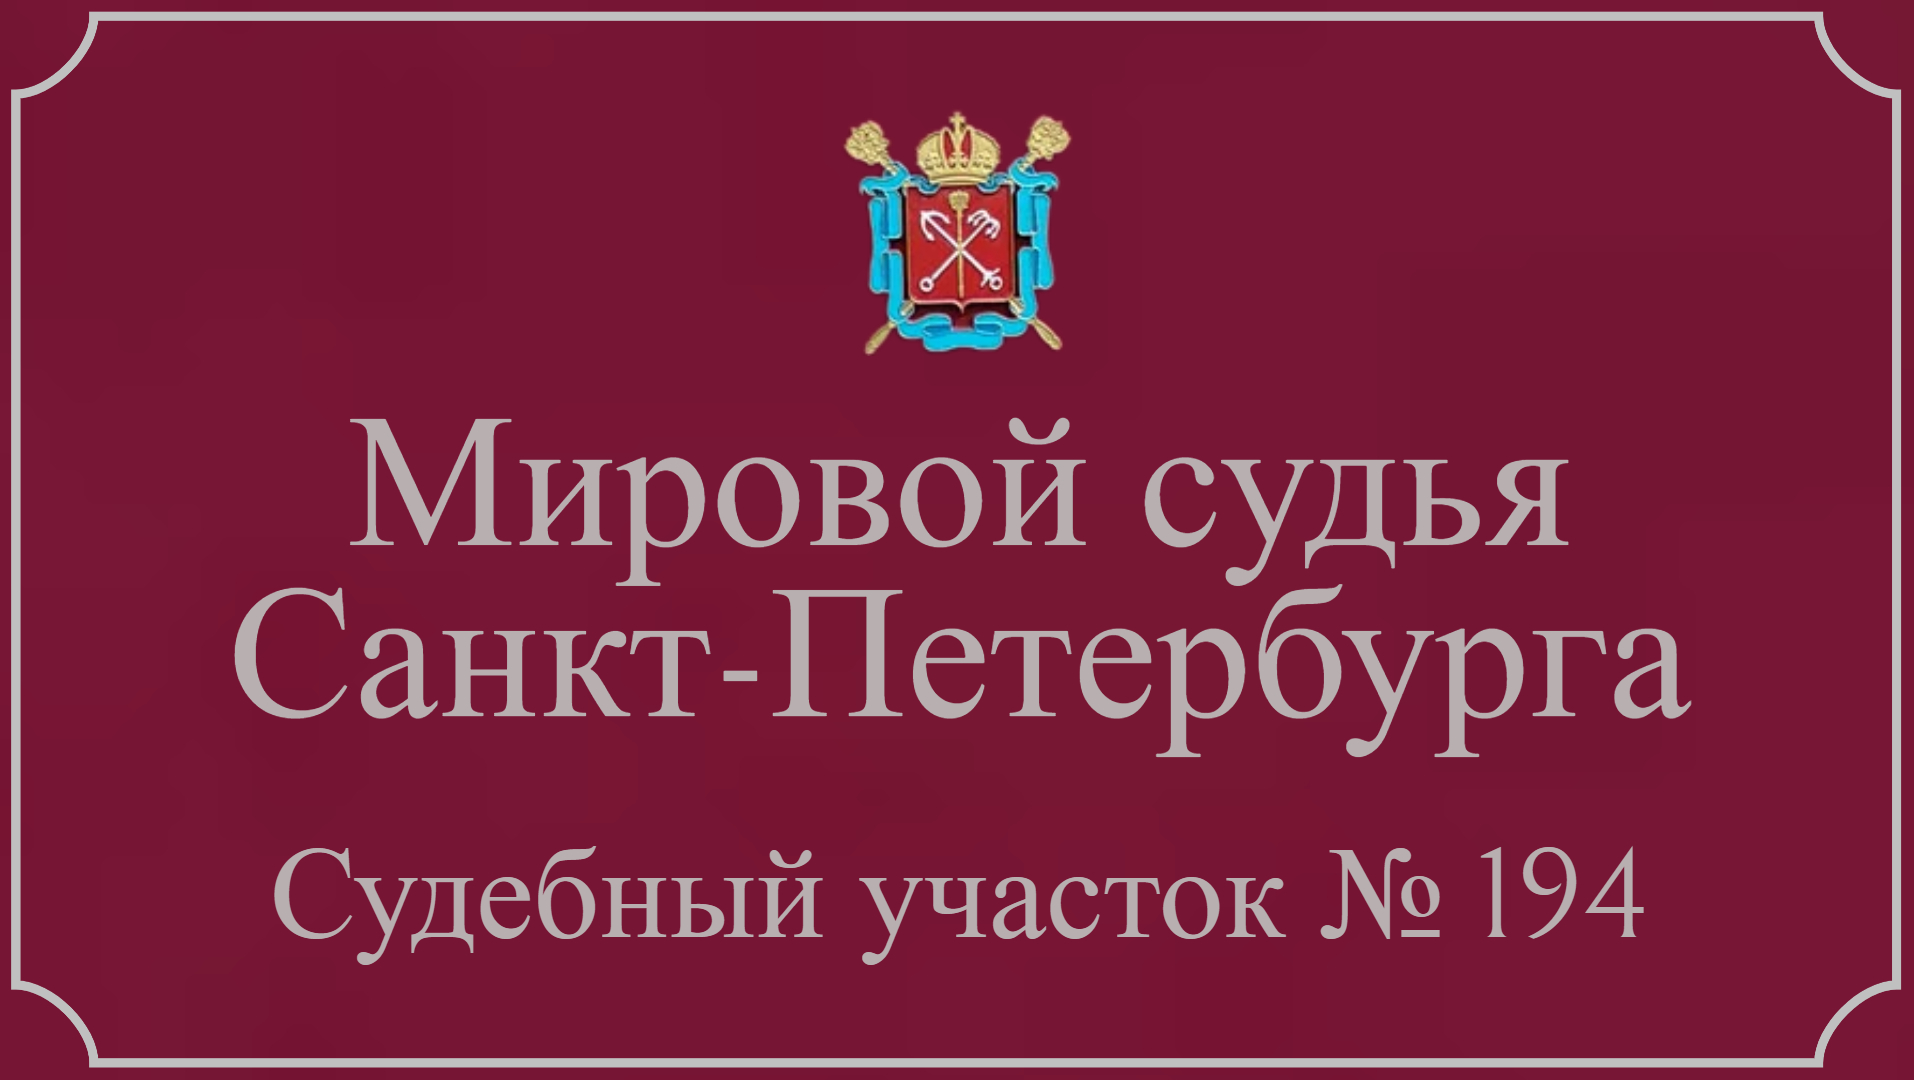 Информация по 194 судебному участку в Санкт-Петербурге.